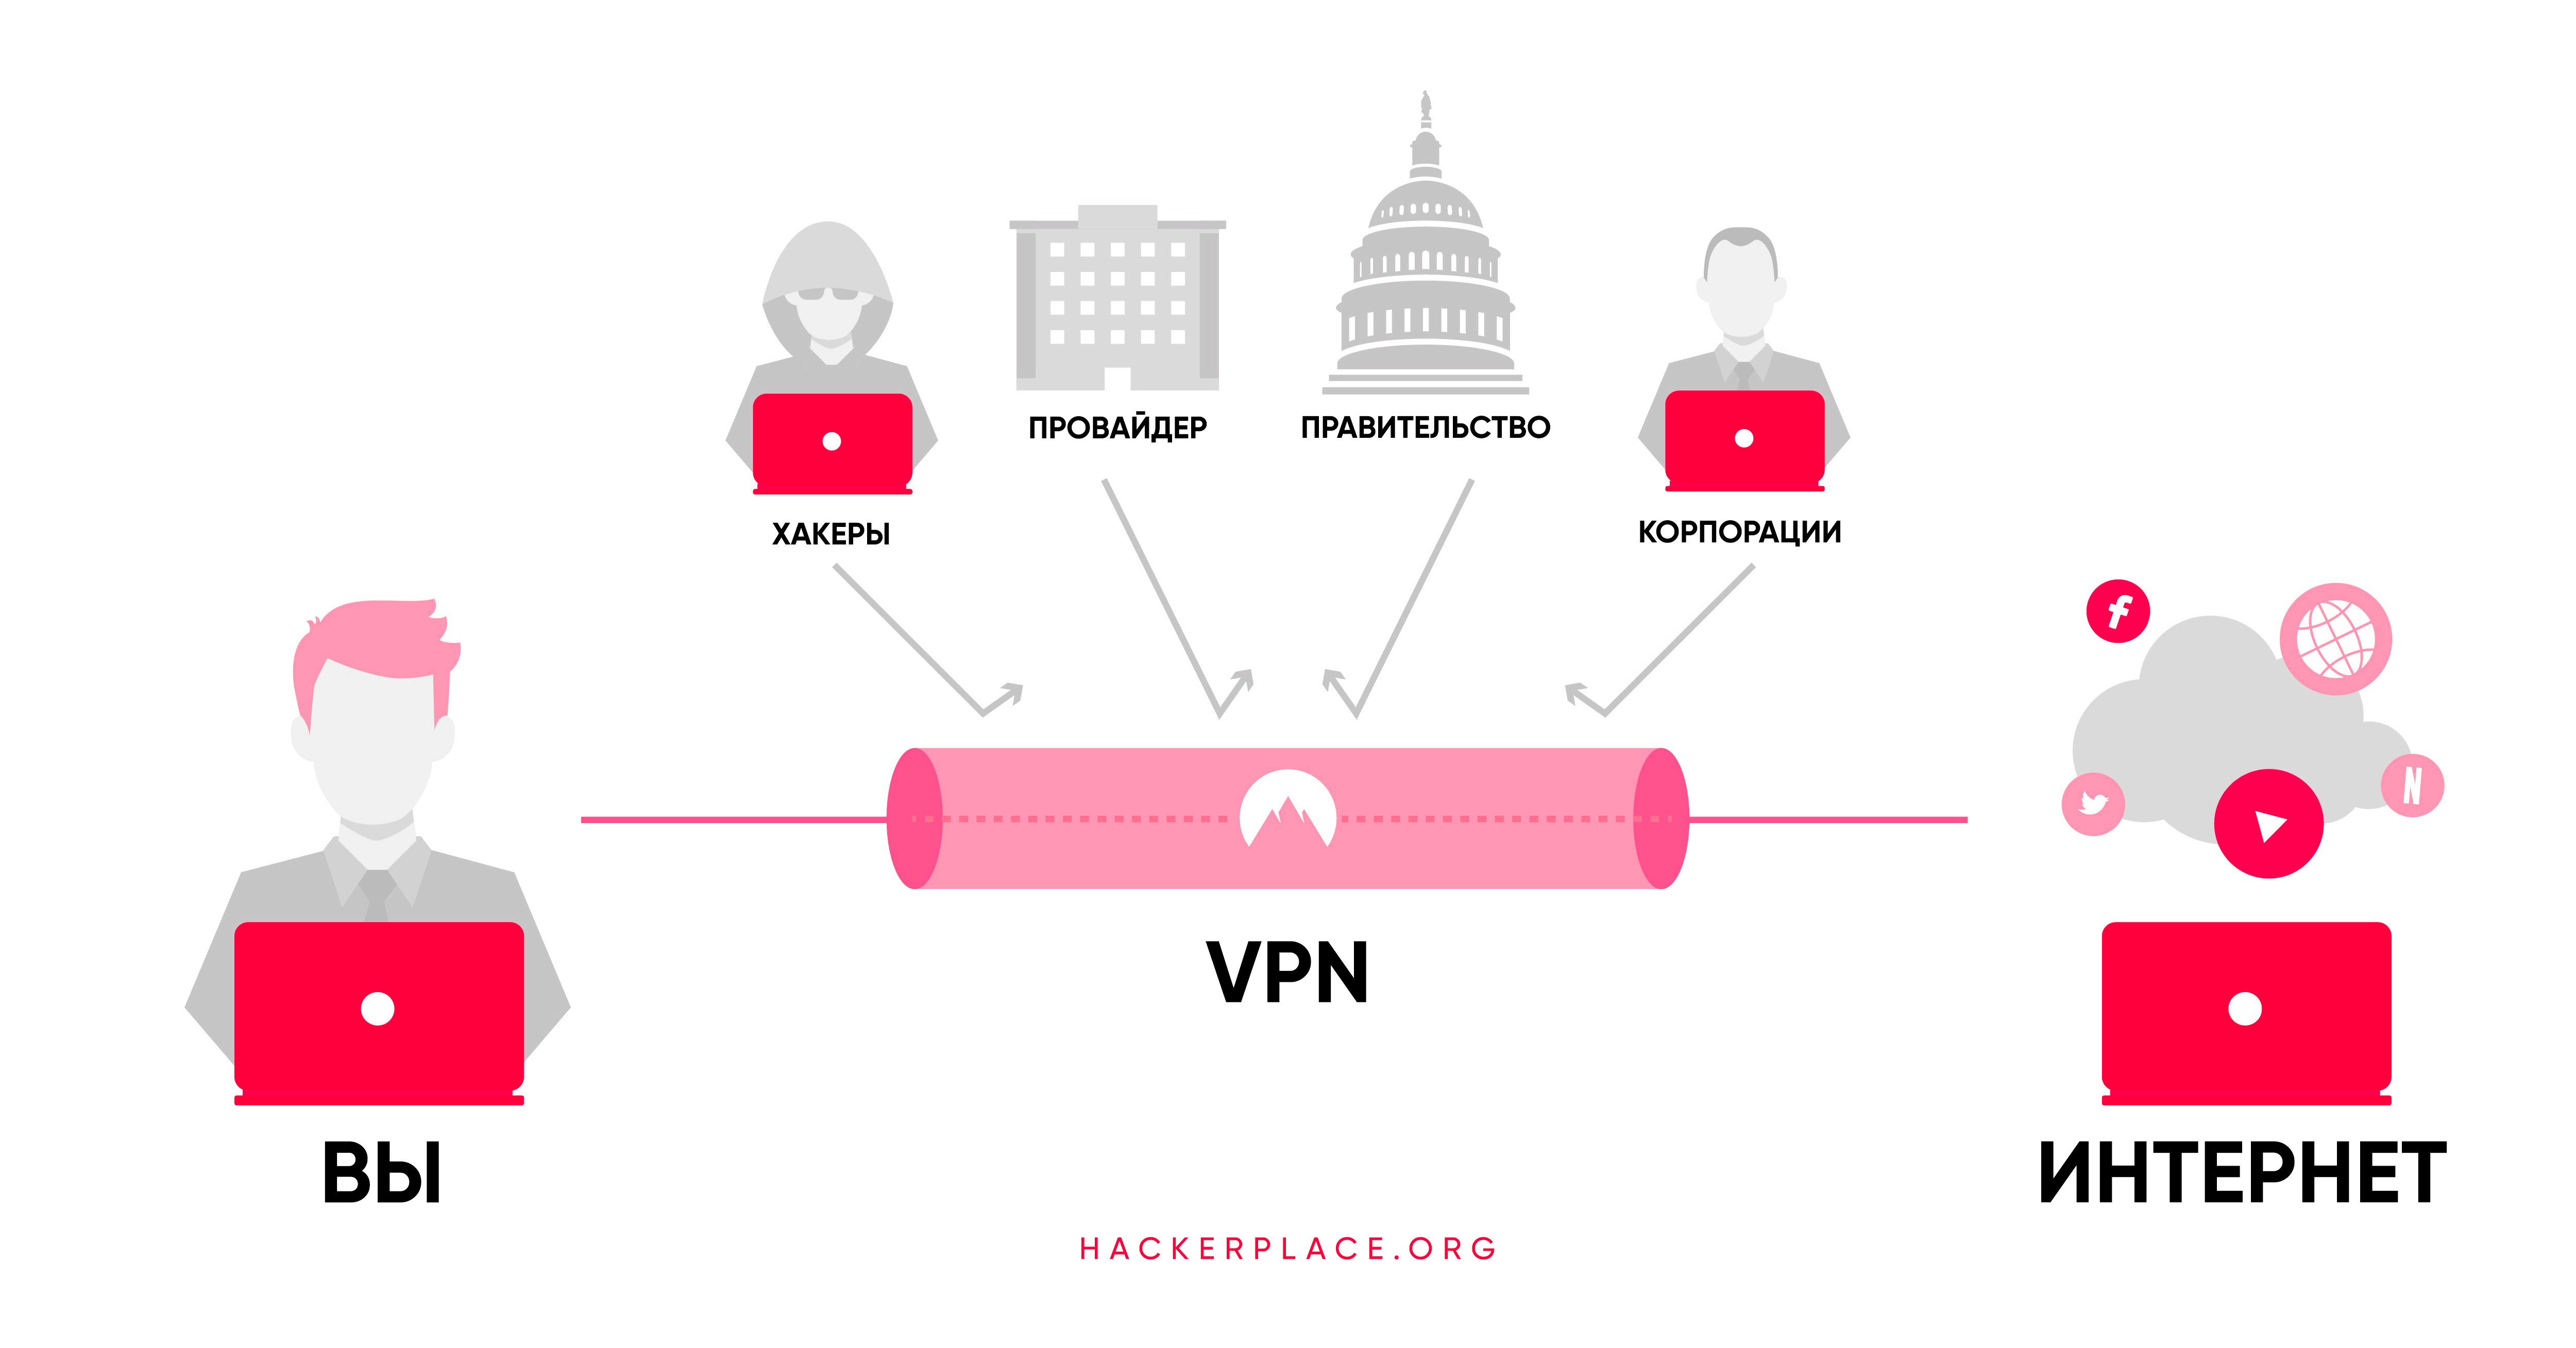 Почему нельзя впн. VPN анонимность. Законно ли впн. Заблокируют ли впн. Может ли впн влиять на интернет.